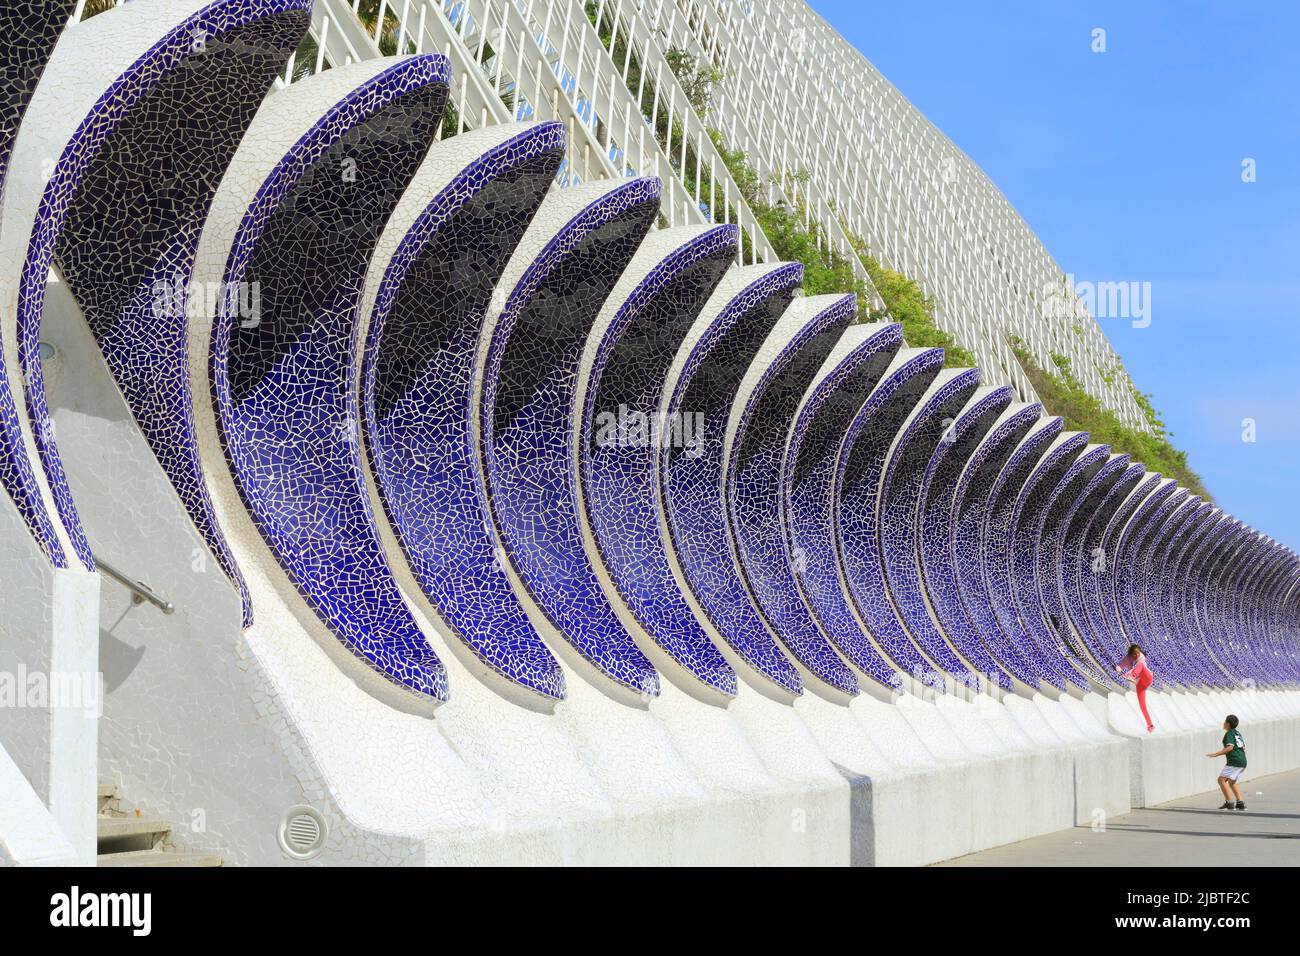 Spanien, Valencia, Stadt der Künste und Wissenschaften (Ciudad de las Artes y las Ciencias), Kulturkomplex nach Plänen des Architekten Santiago Calatrava, Seitenansicht des Umbracle (öffentlicher Garten) Stockfoto